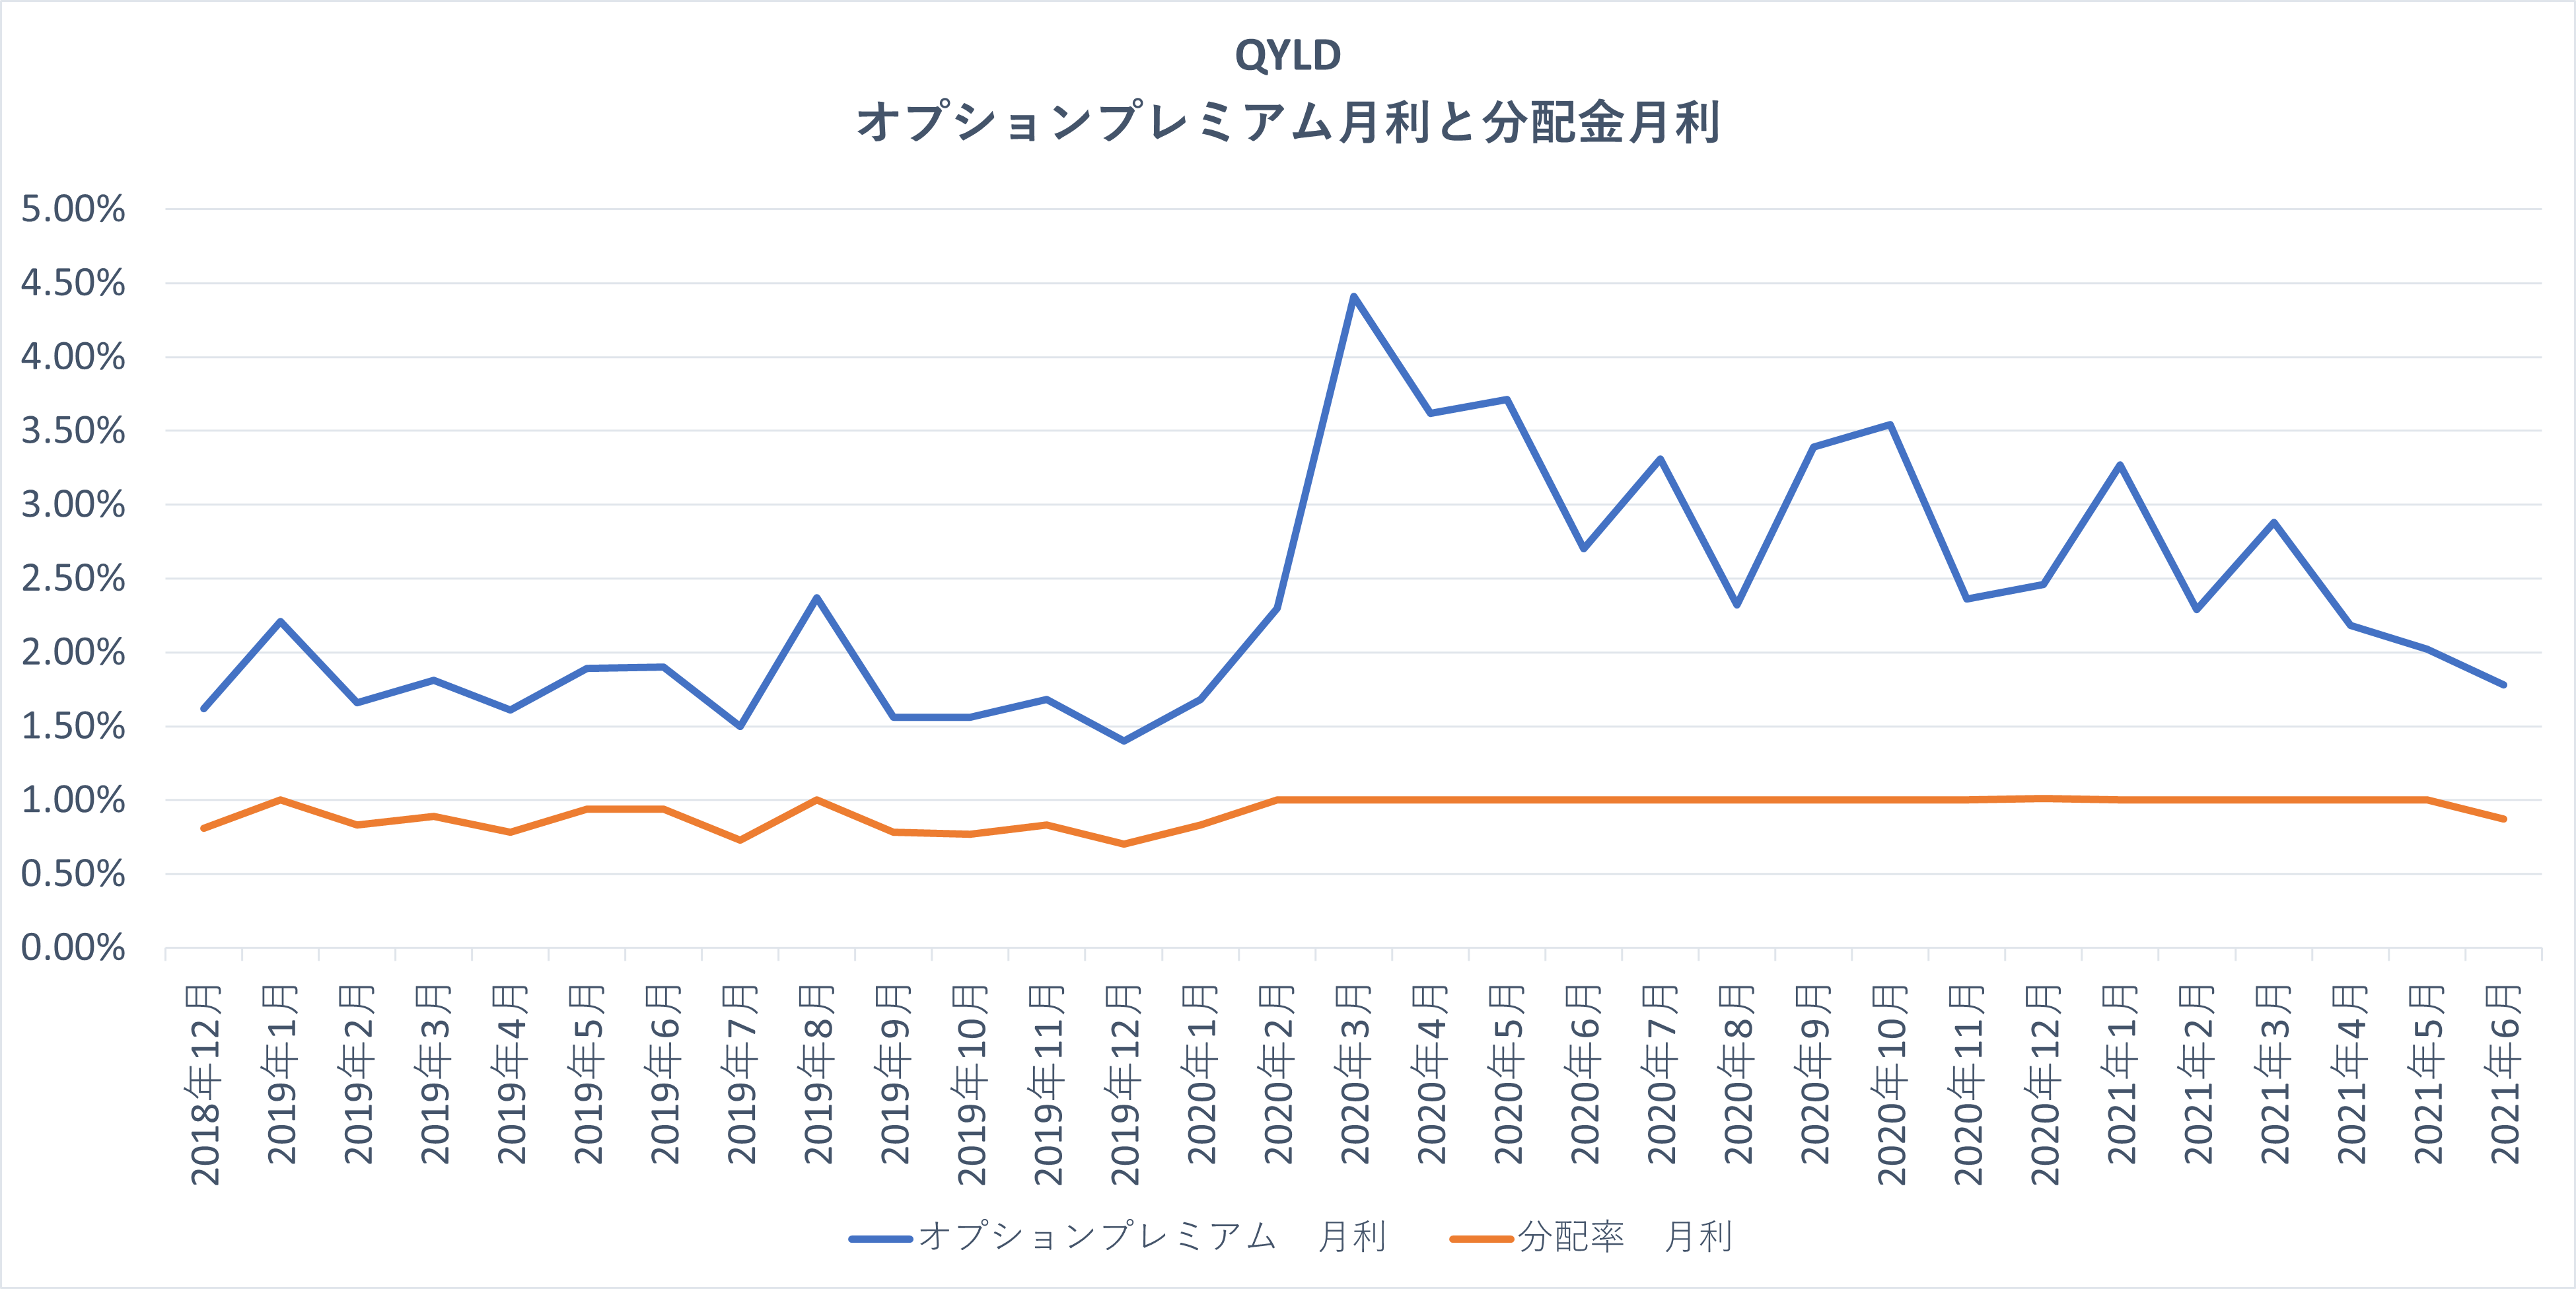 QYLDのオプションプレミアムの月度収益率と分配金の比率